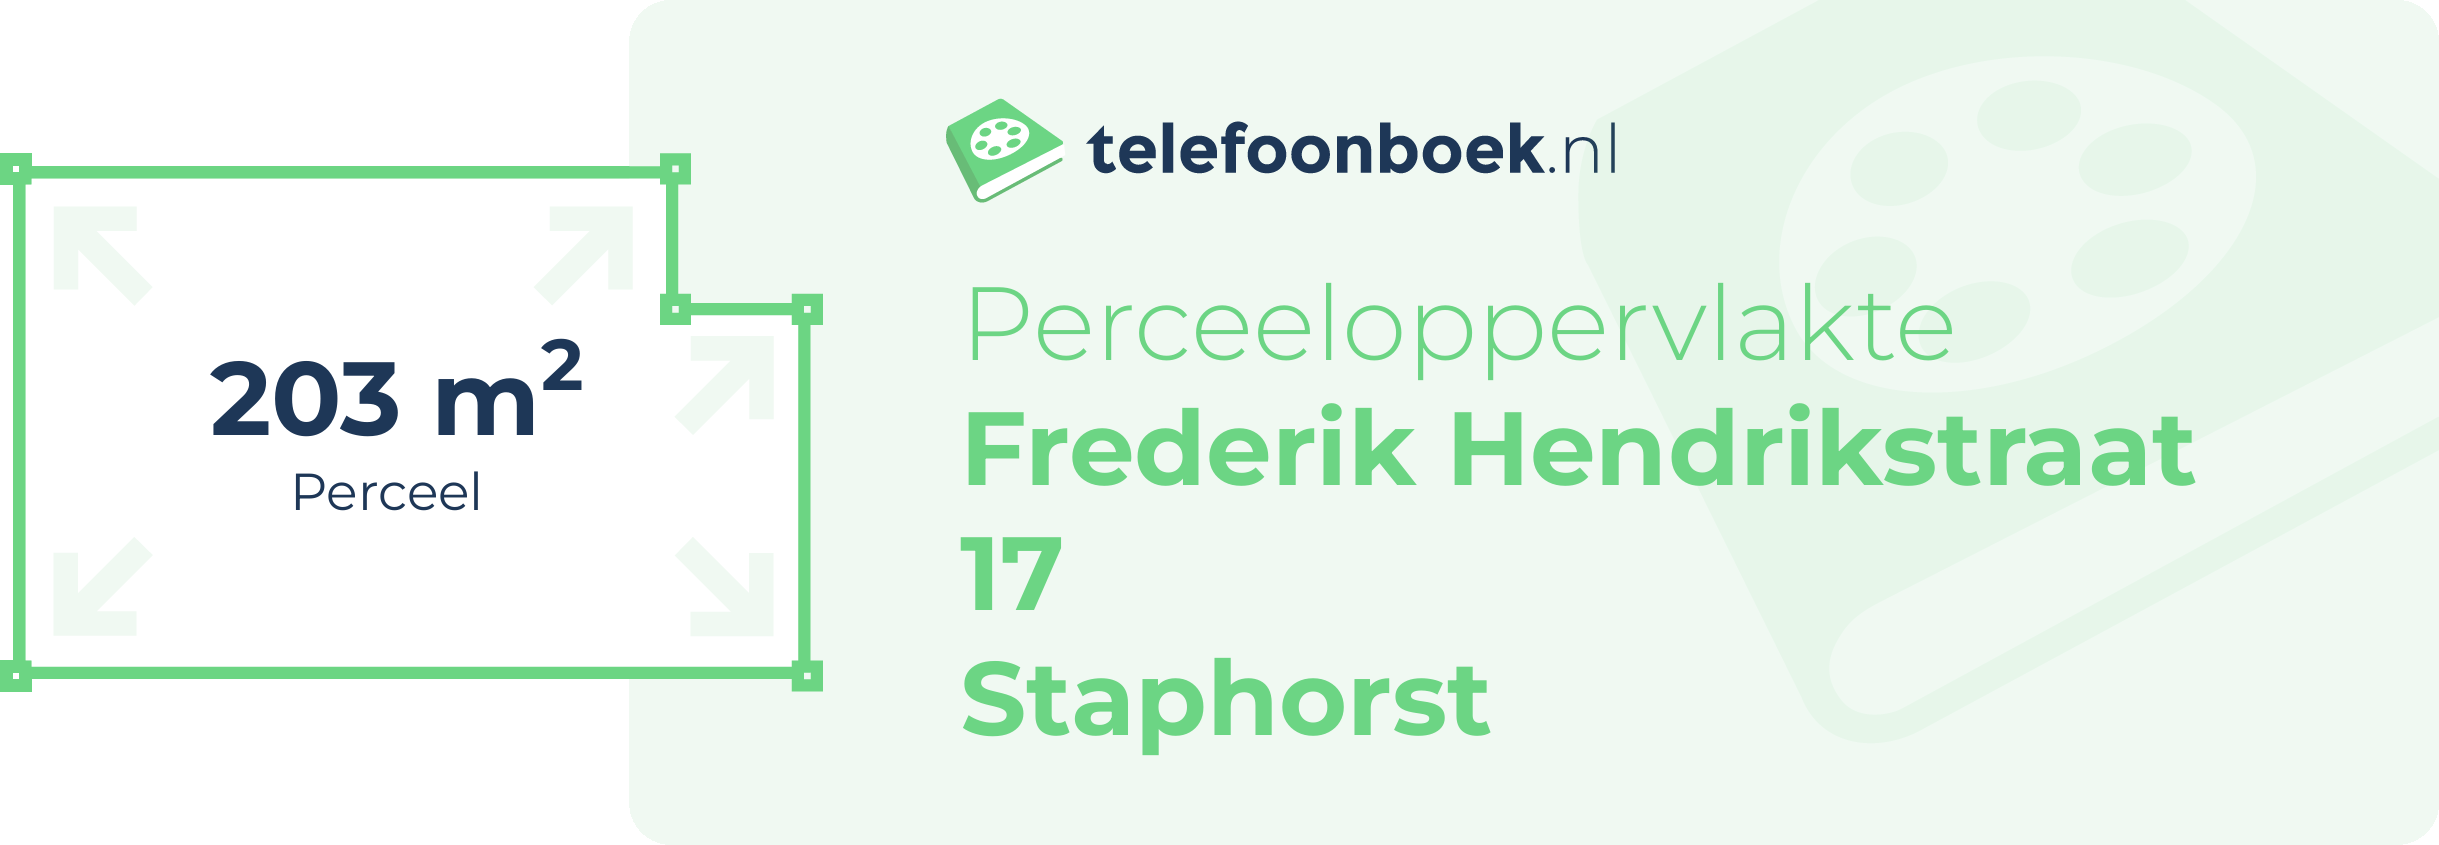 Perceeloppervlakte Frederik Hendrikstraat 17 Staphorst